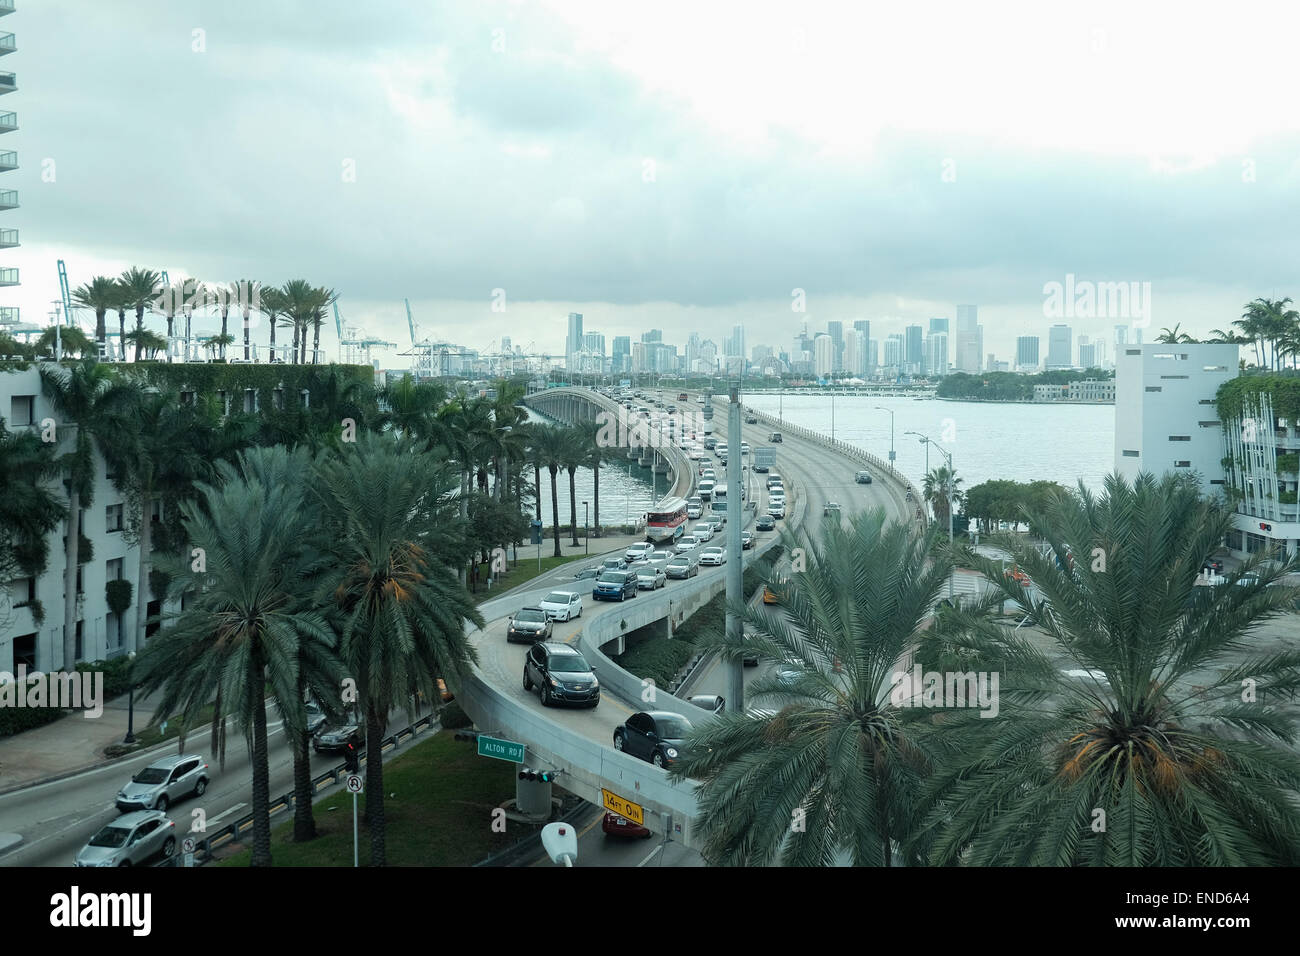 Miami Stadtbild - Schwerverkehr über eine Brücke mit Miami Skyline im Hintergrund Stockfoto